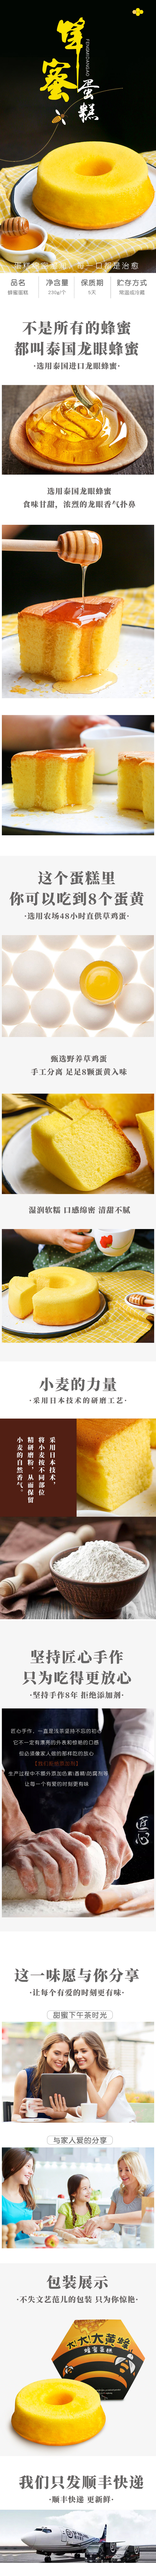 淘宝美工宫羽时尚简约质感零食面包蜂蜜蛋糕详情页设计作品